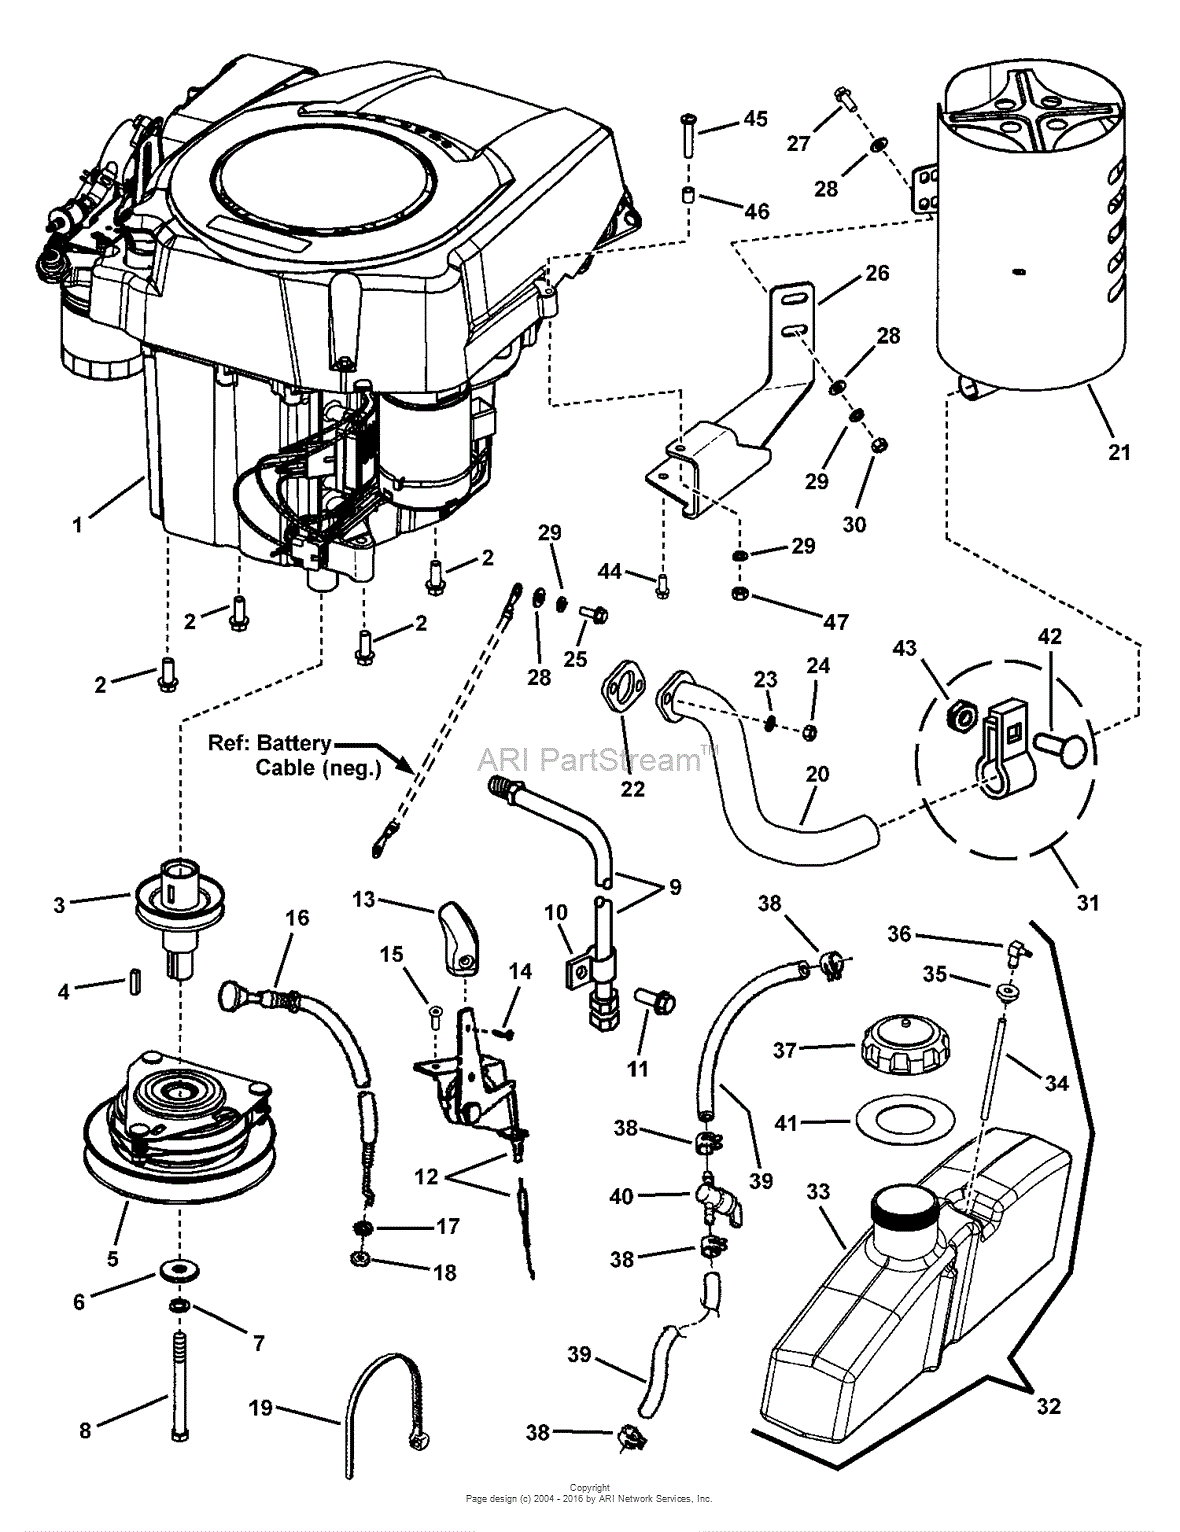 27 Hp Kohler Engine Diagram